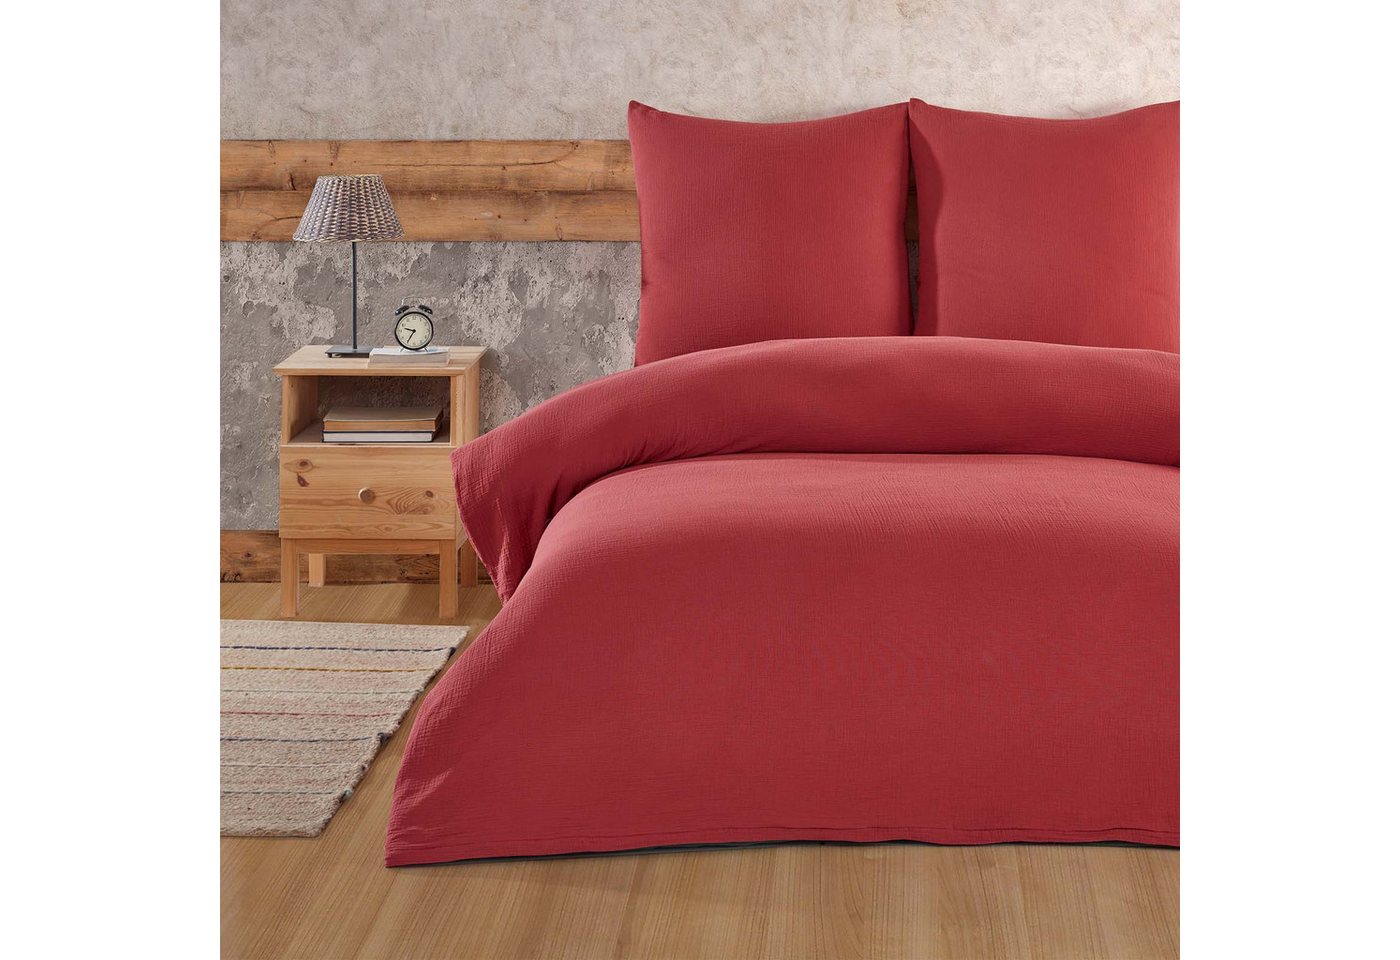 Bettwäsche Luxury, Buymax, Musselin 100% Baumwolle, 2 teilig, 135x200 cm, Bettbezug Set, Uni, einfarbig, mit Reißverschluss, Rot von Buymax